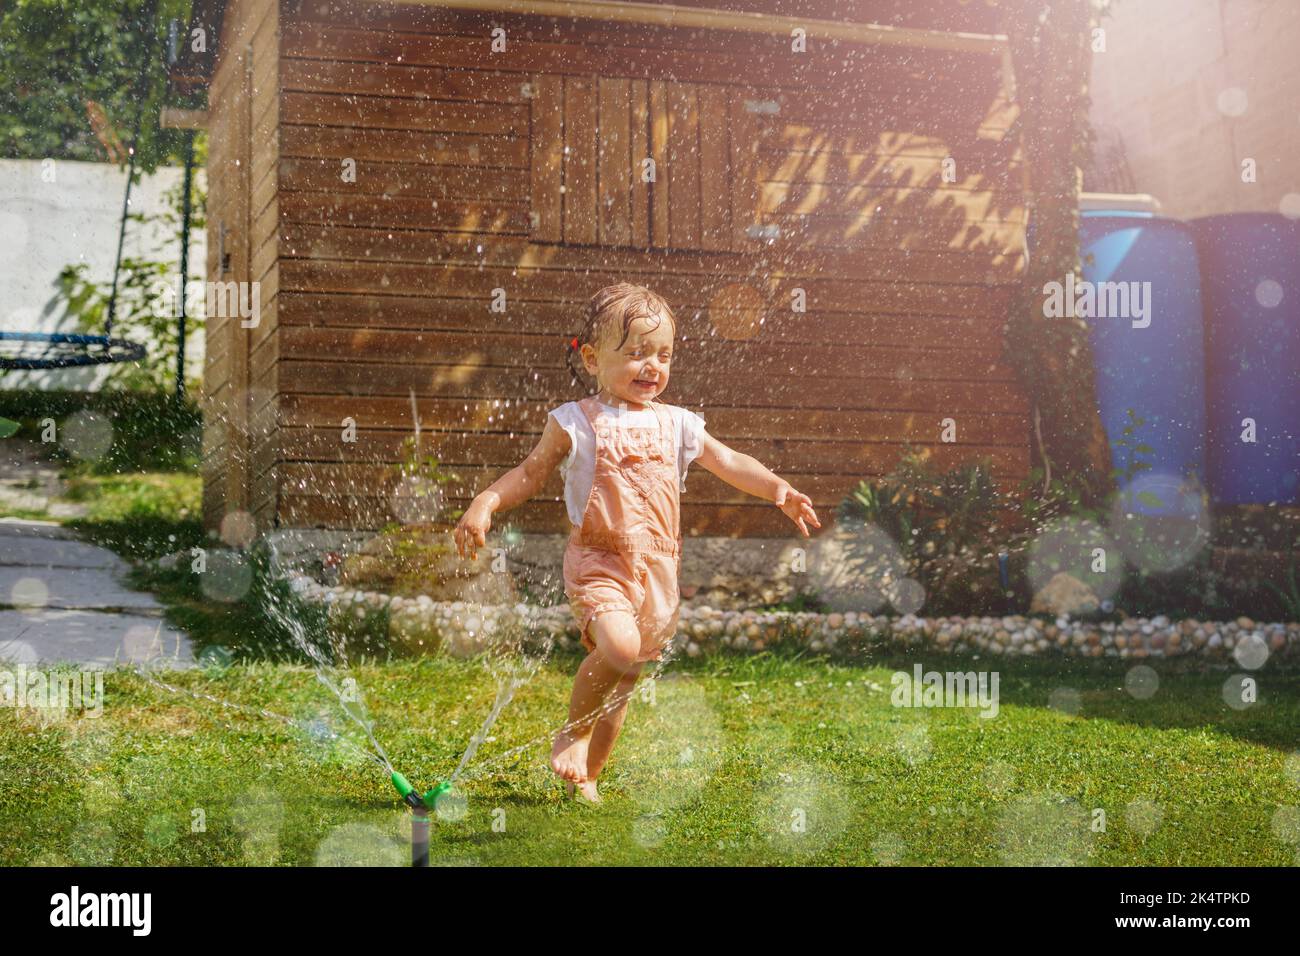 Une fille en vêtements mouillés coule autour d'un arroseur d'eau dans le jardin Banque D'Images